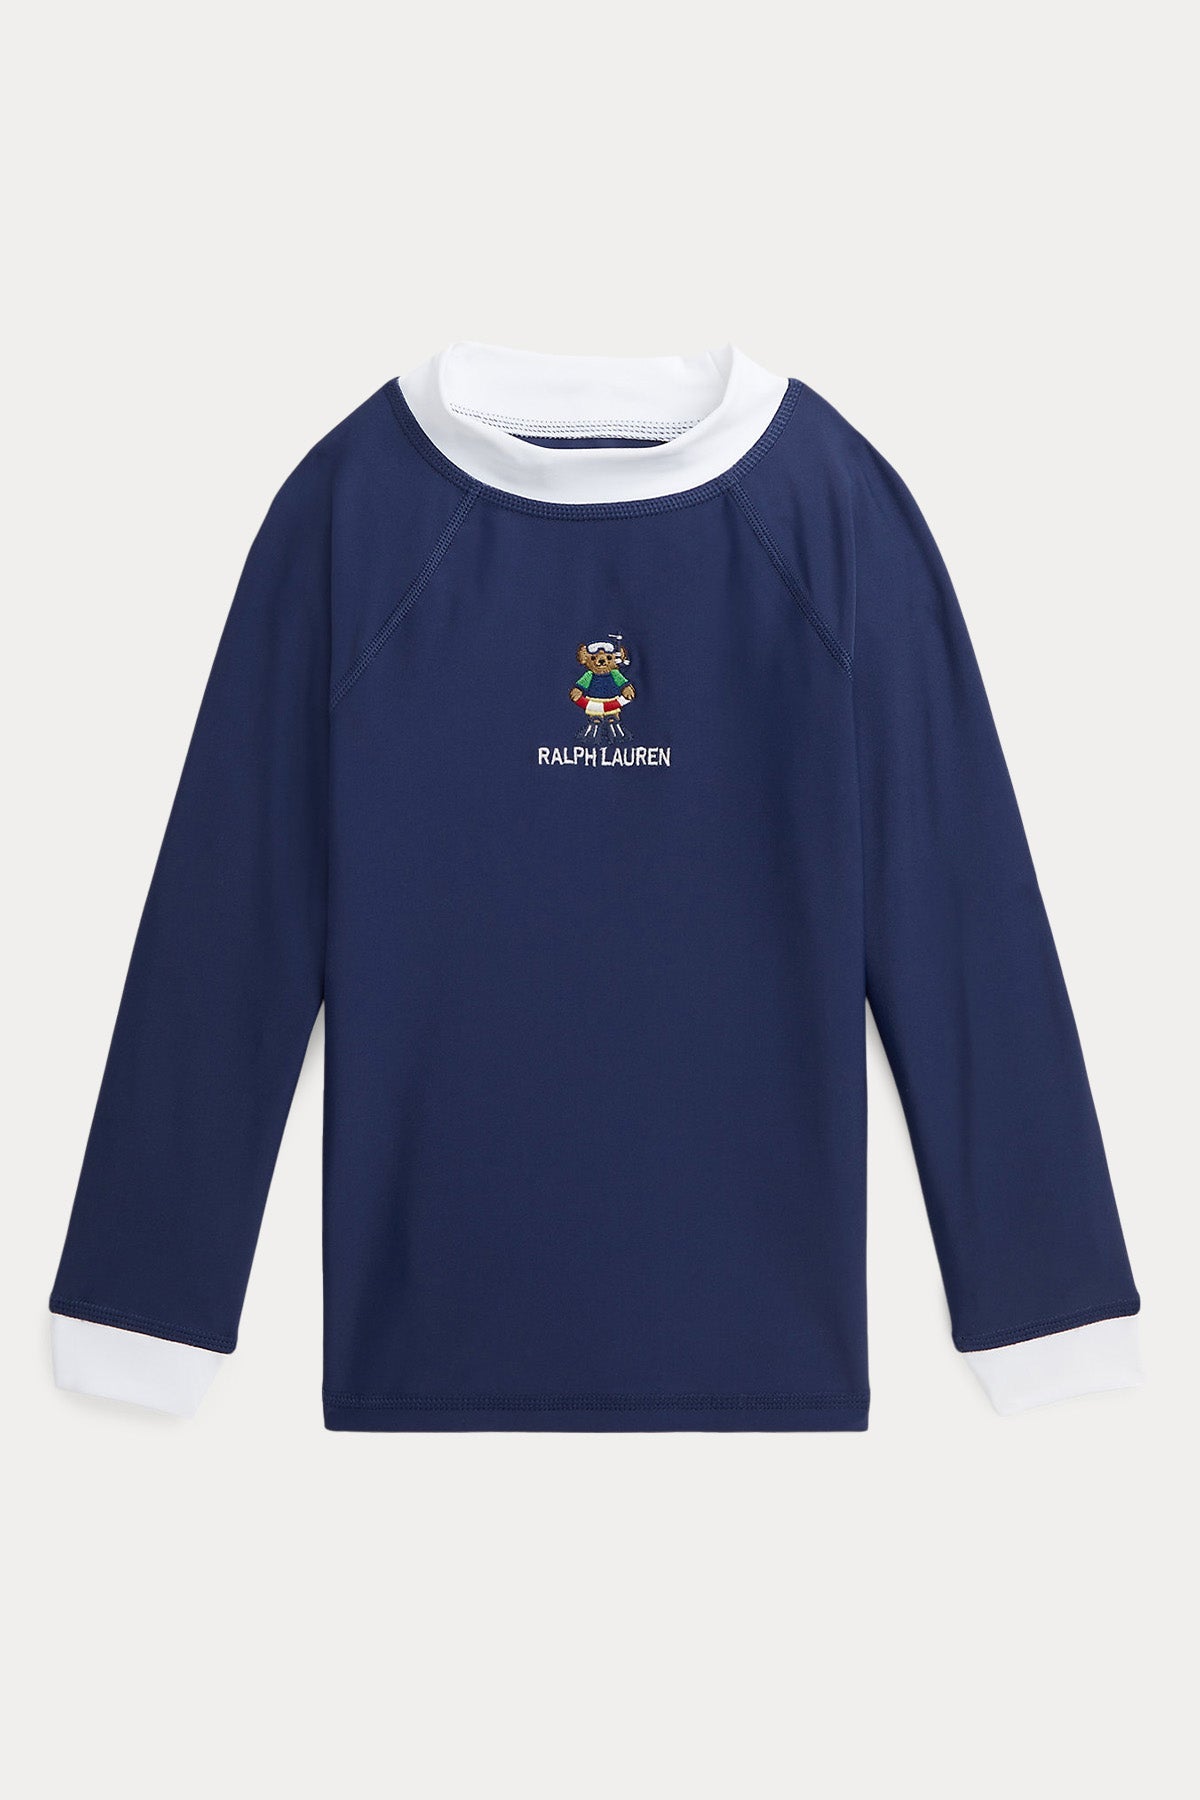 Polo Ralph Lauren Kids 2-4 Yaş Erkek Çocuk Polo Bear Likra T-shirt